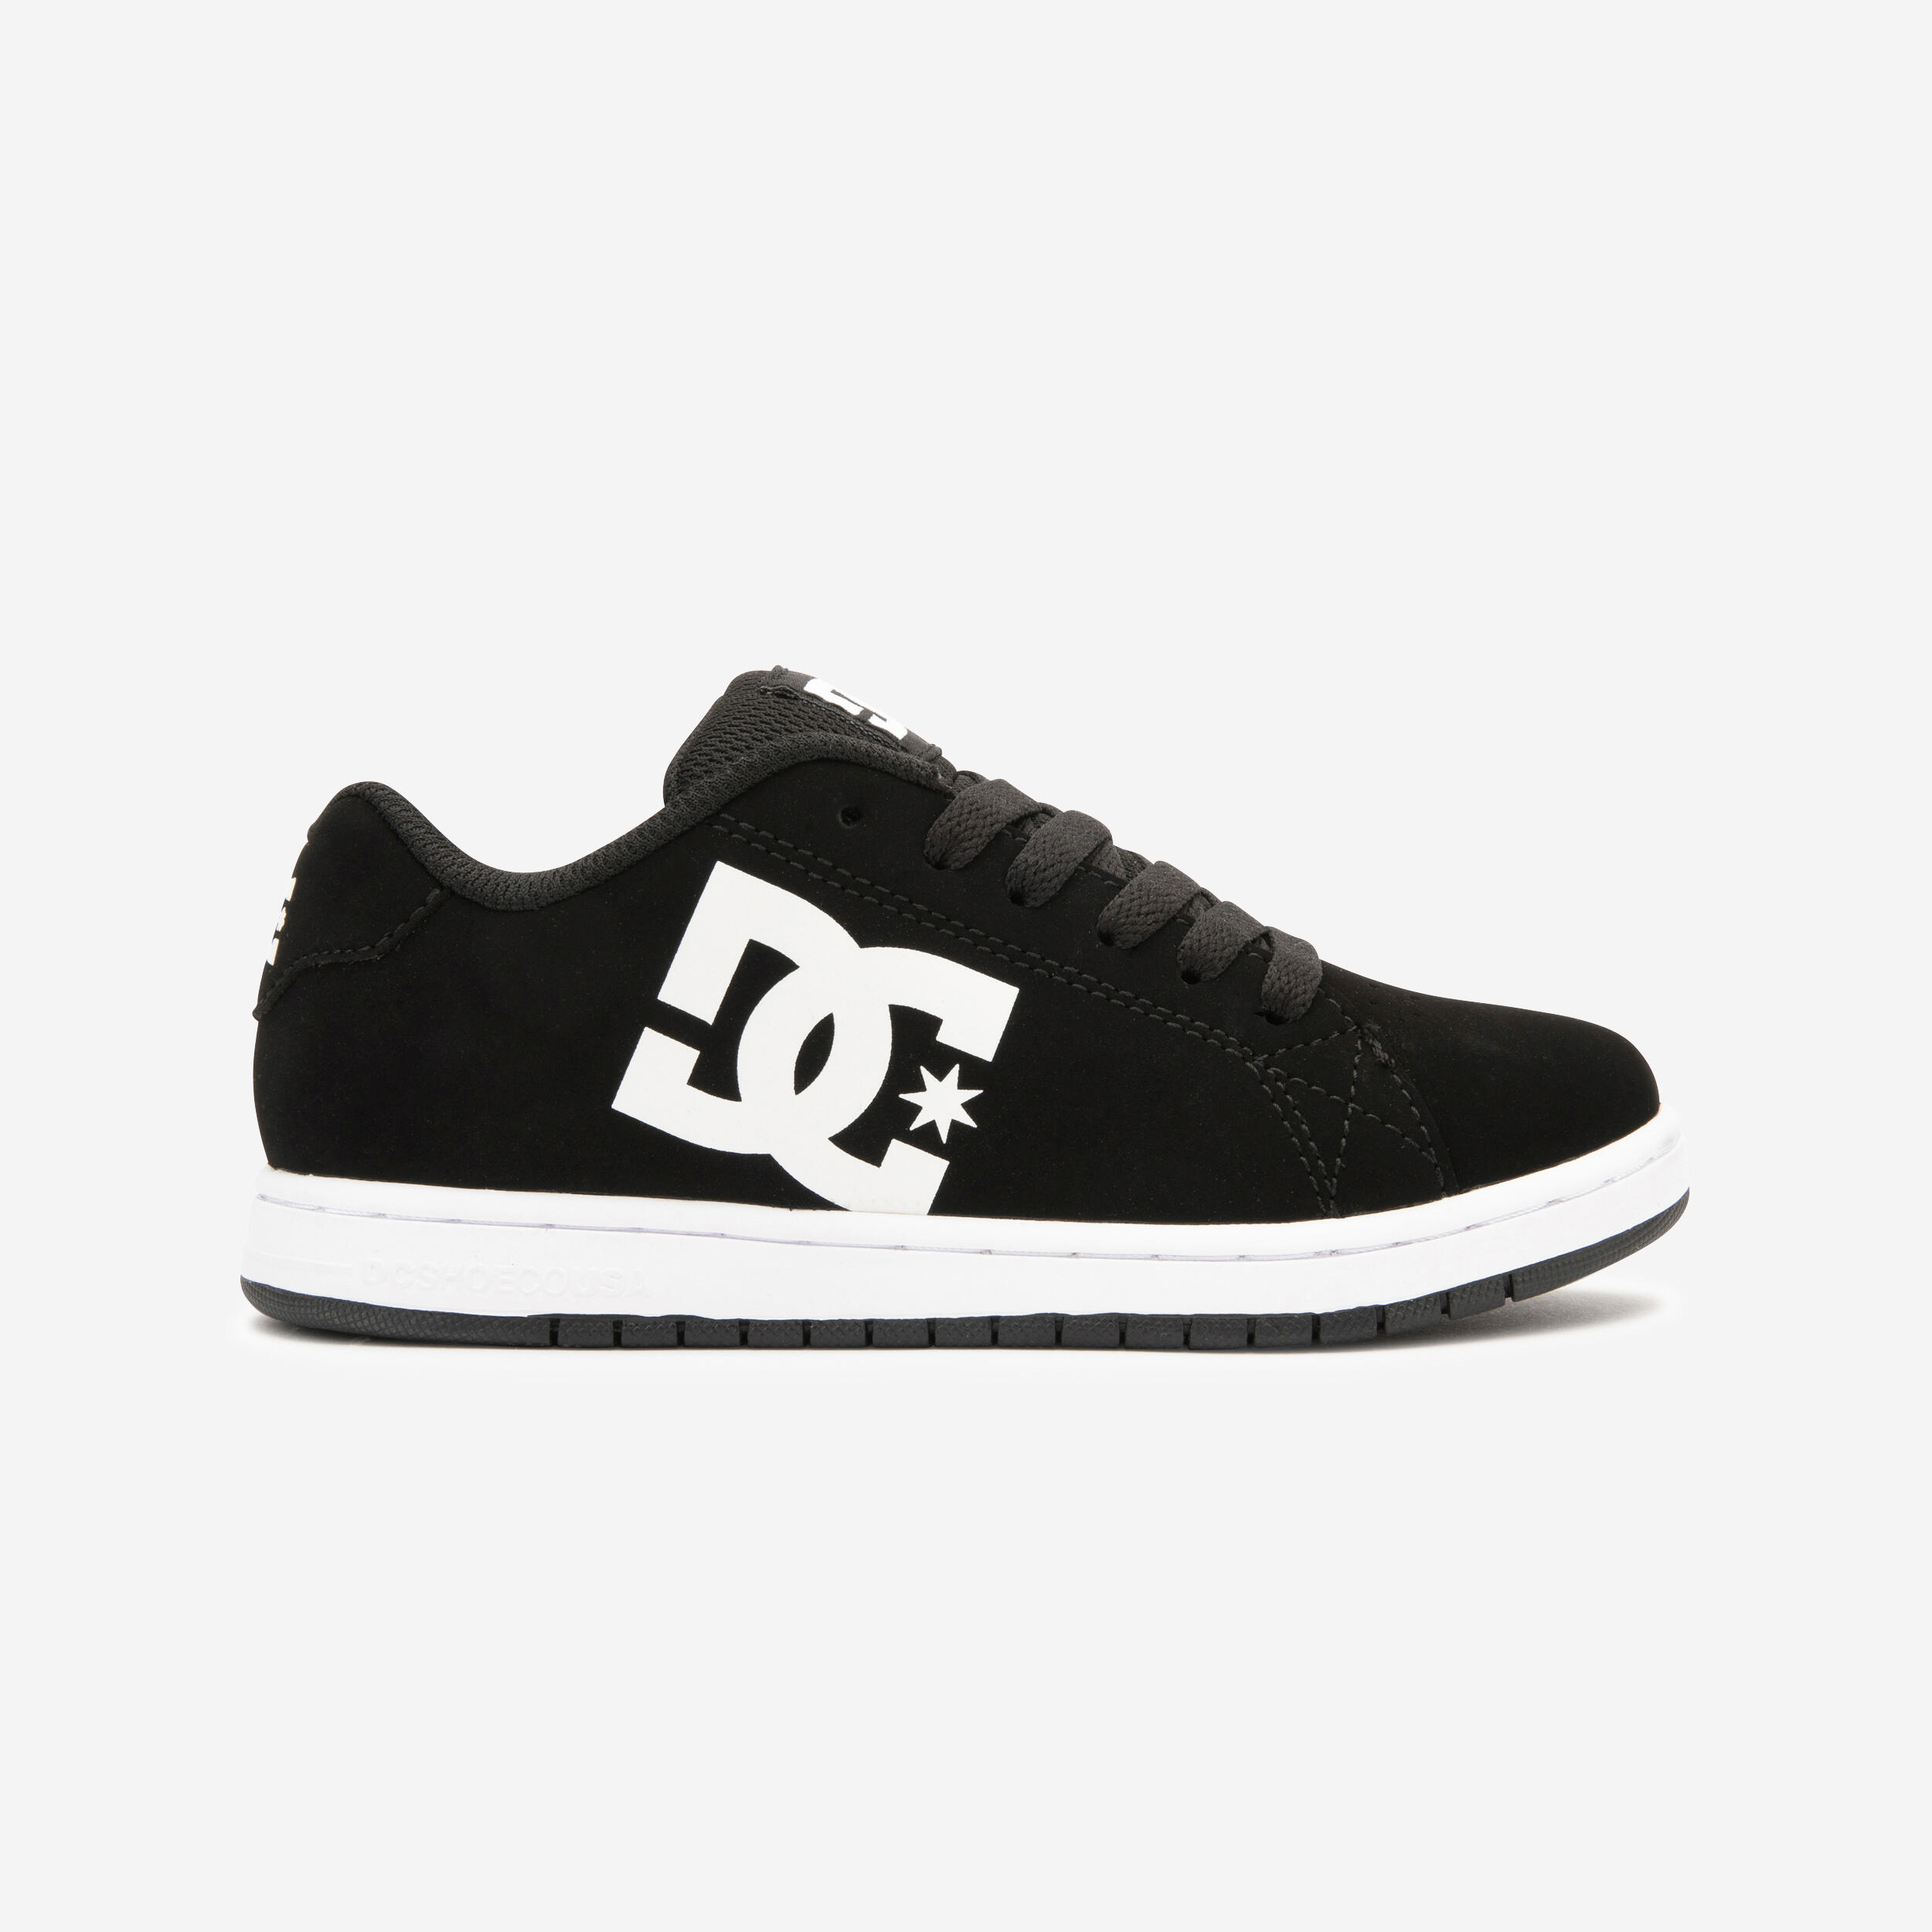 Kids' Skateboarding Shoes Gaveler - Black/White DC SHOES | Decathlon